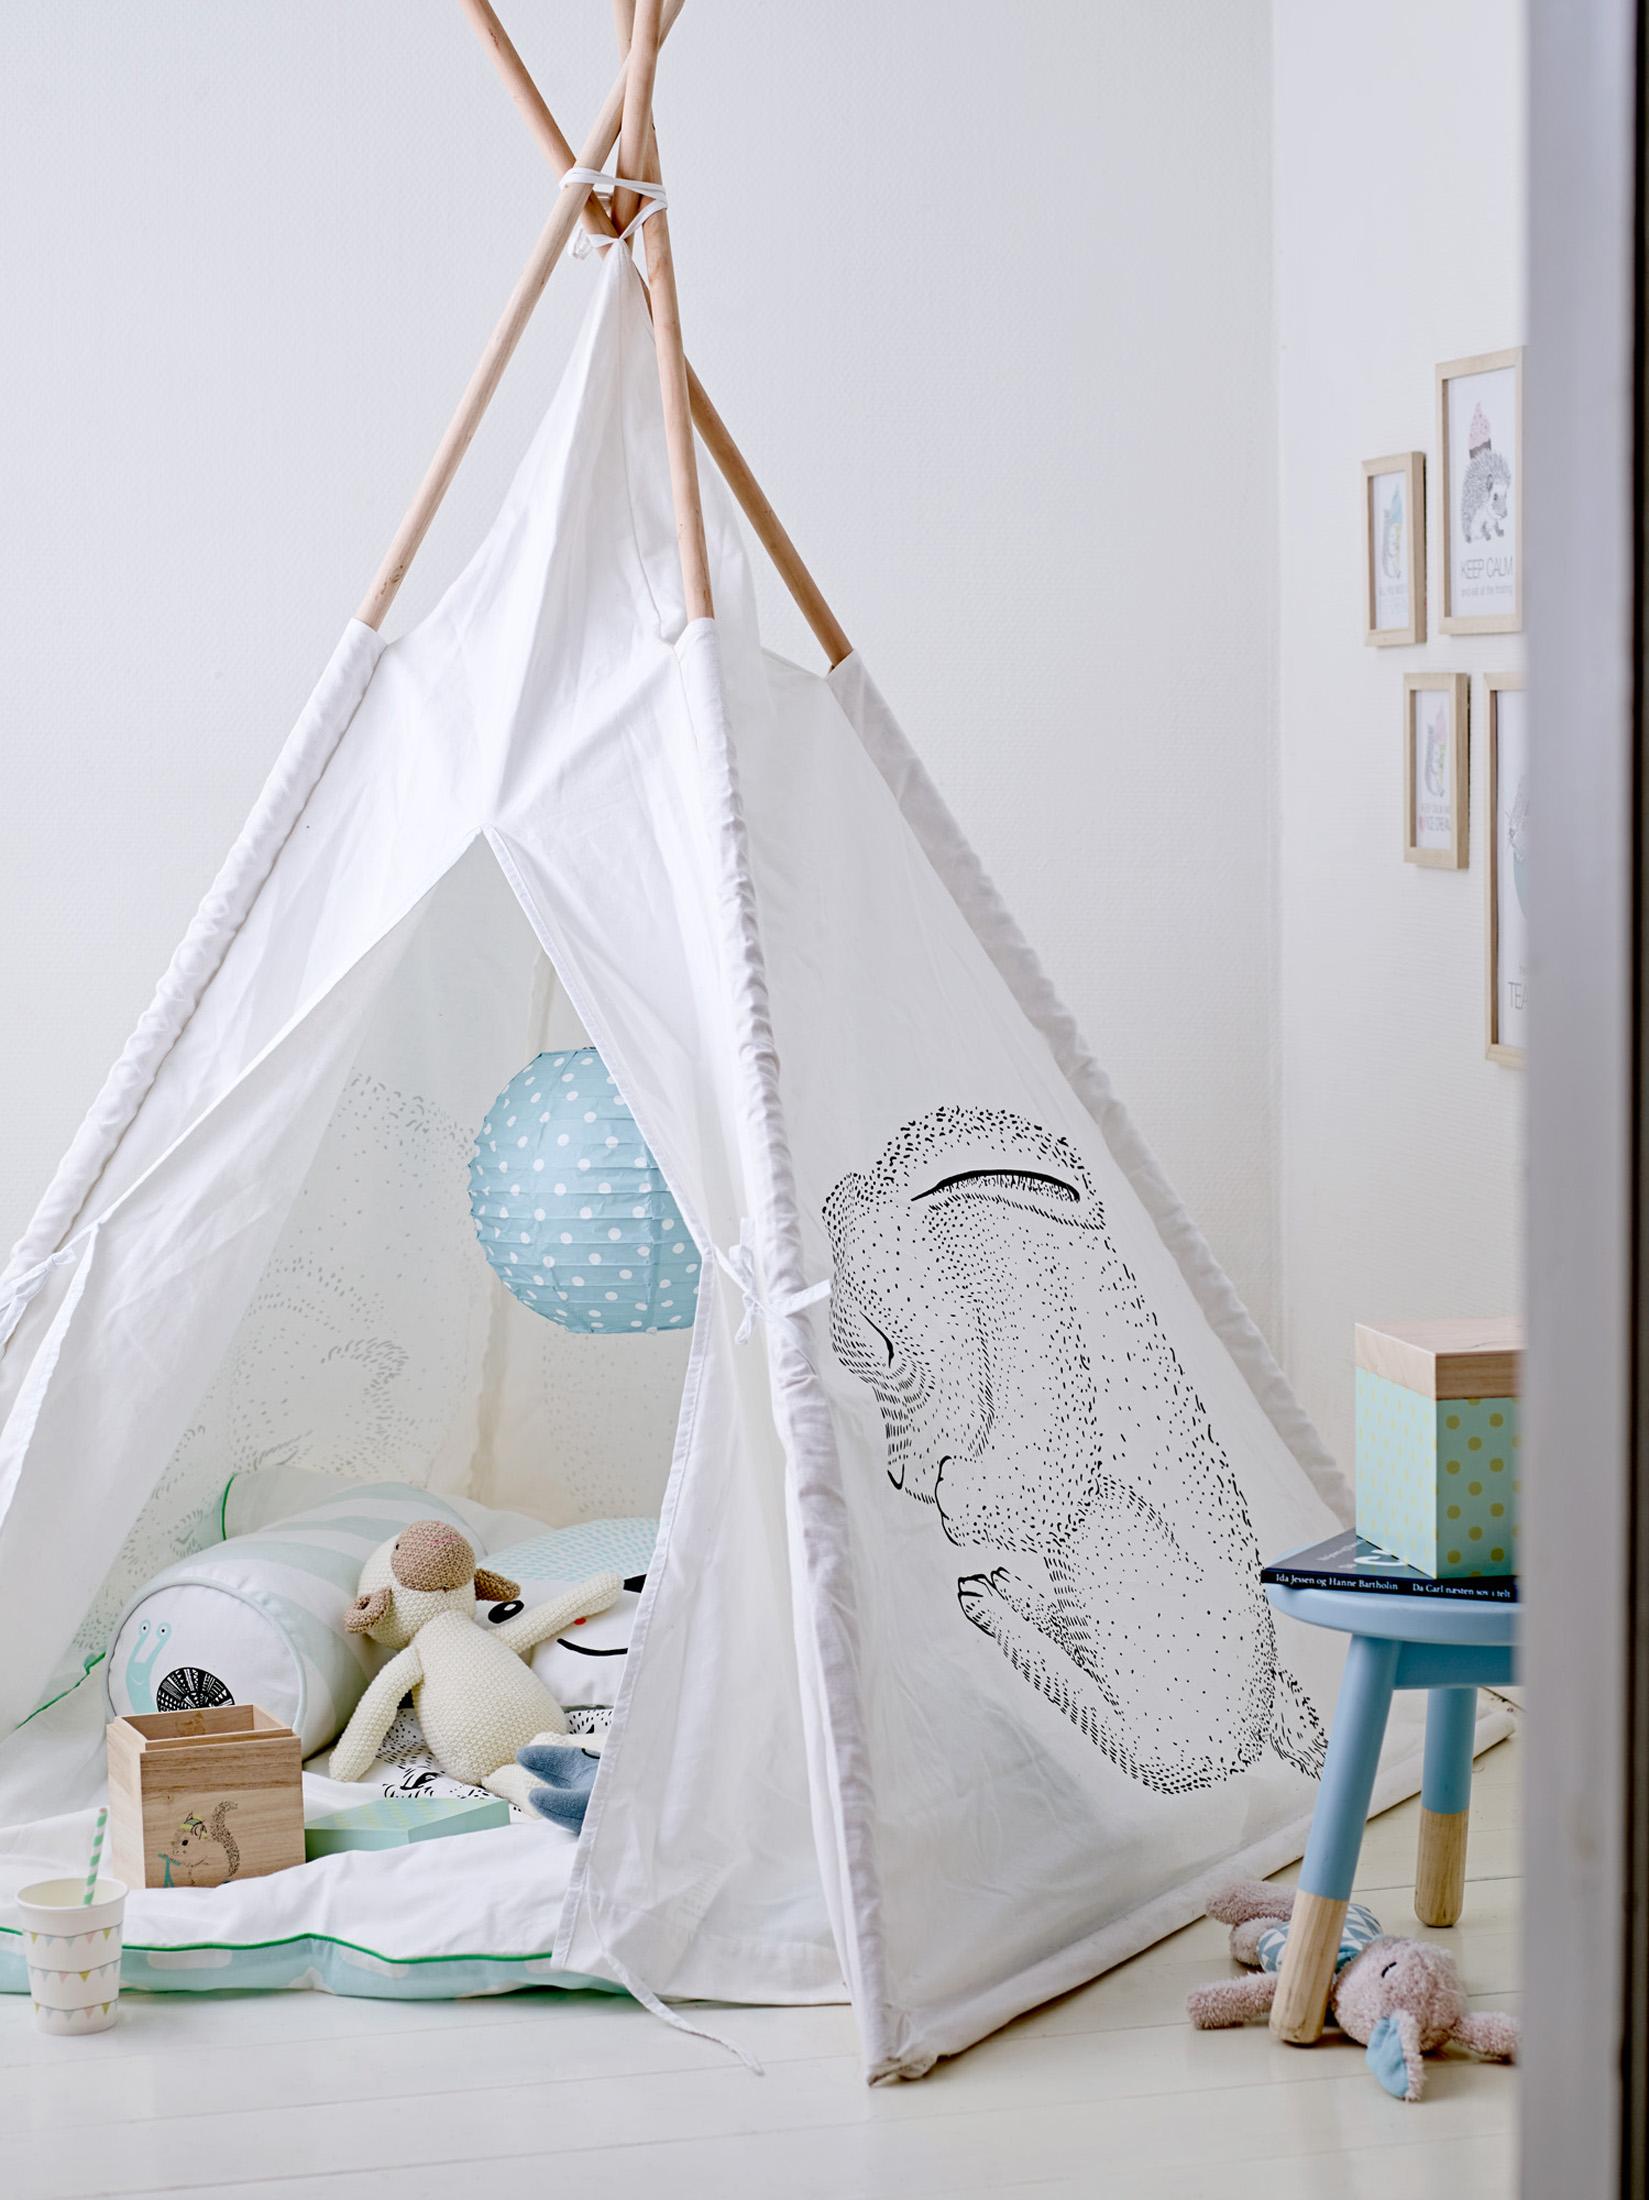 Gemütliche Spielecke mit Zelt im Kinderzimmer #hocker #kissen #lampion #zelt #zimmergestaltung ©Bloomingville